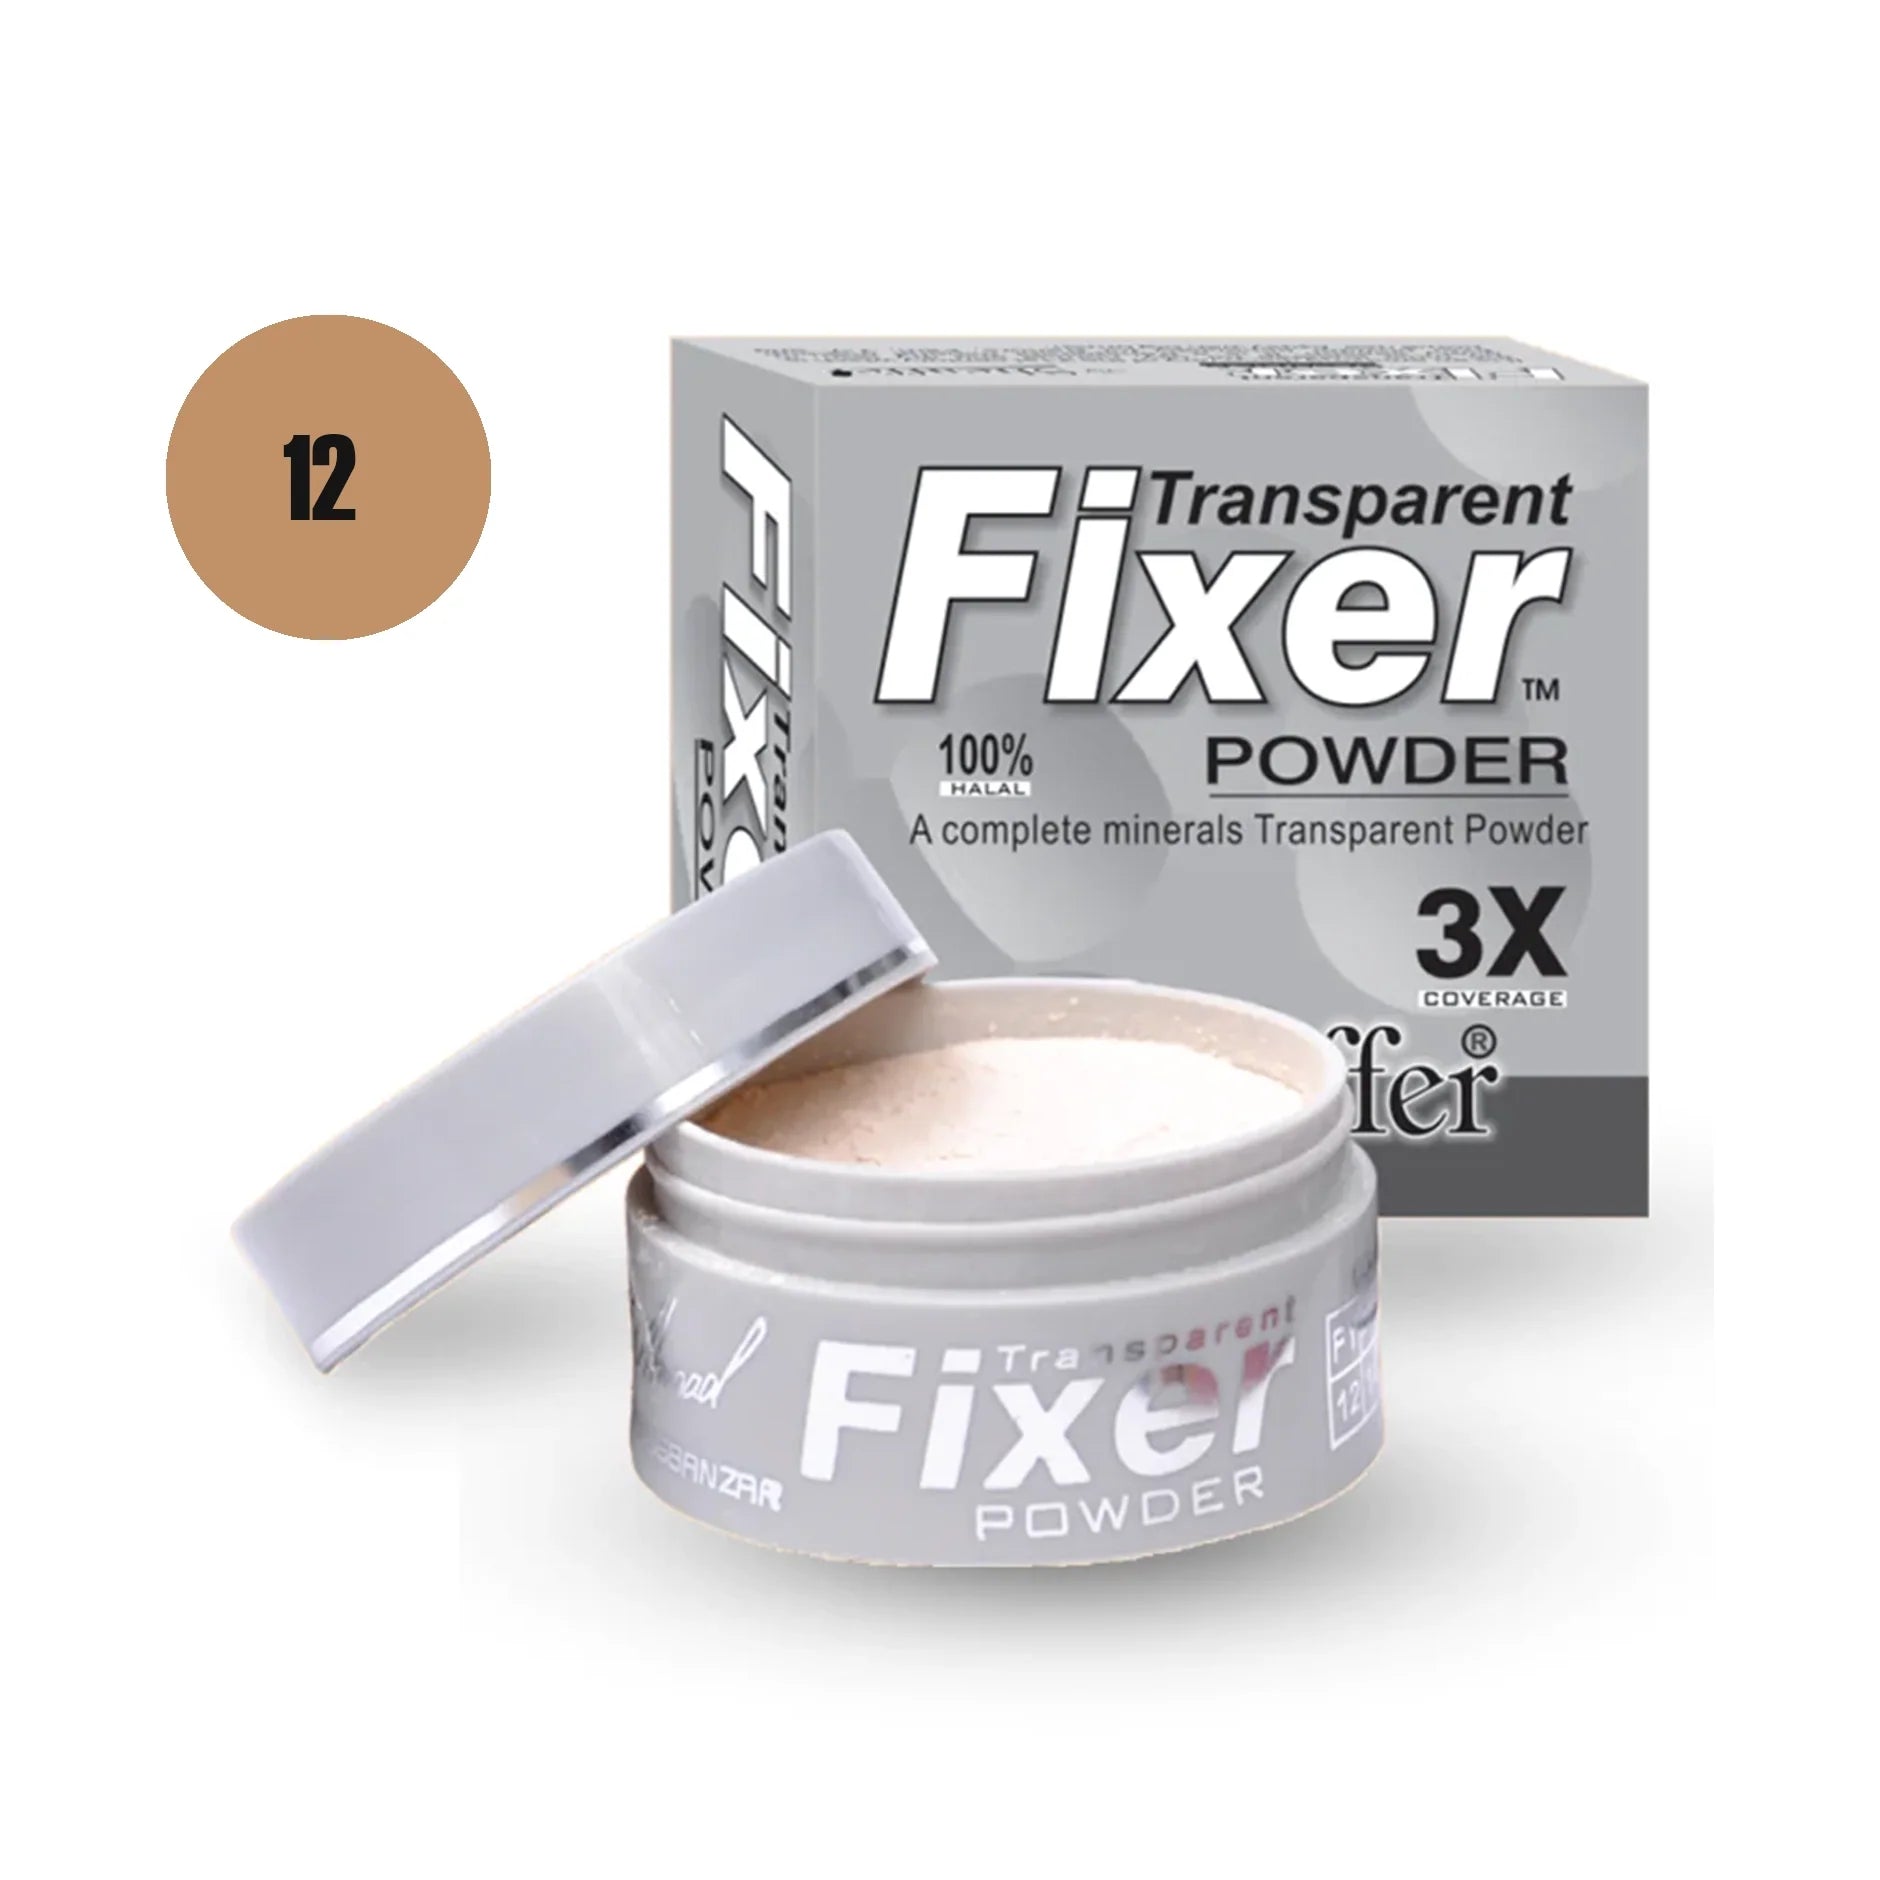 Sheaffer Transparent Fixer Powder Shade No 02 - Retailershop - Online Shopping Center